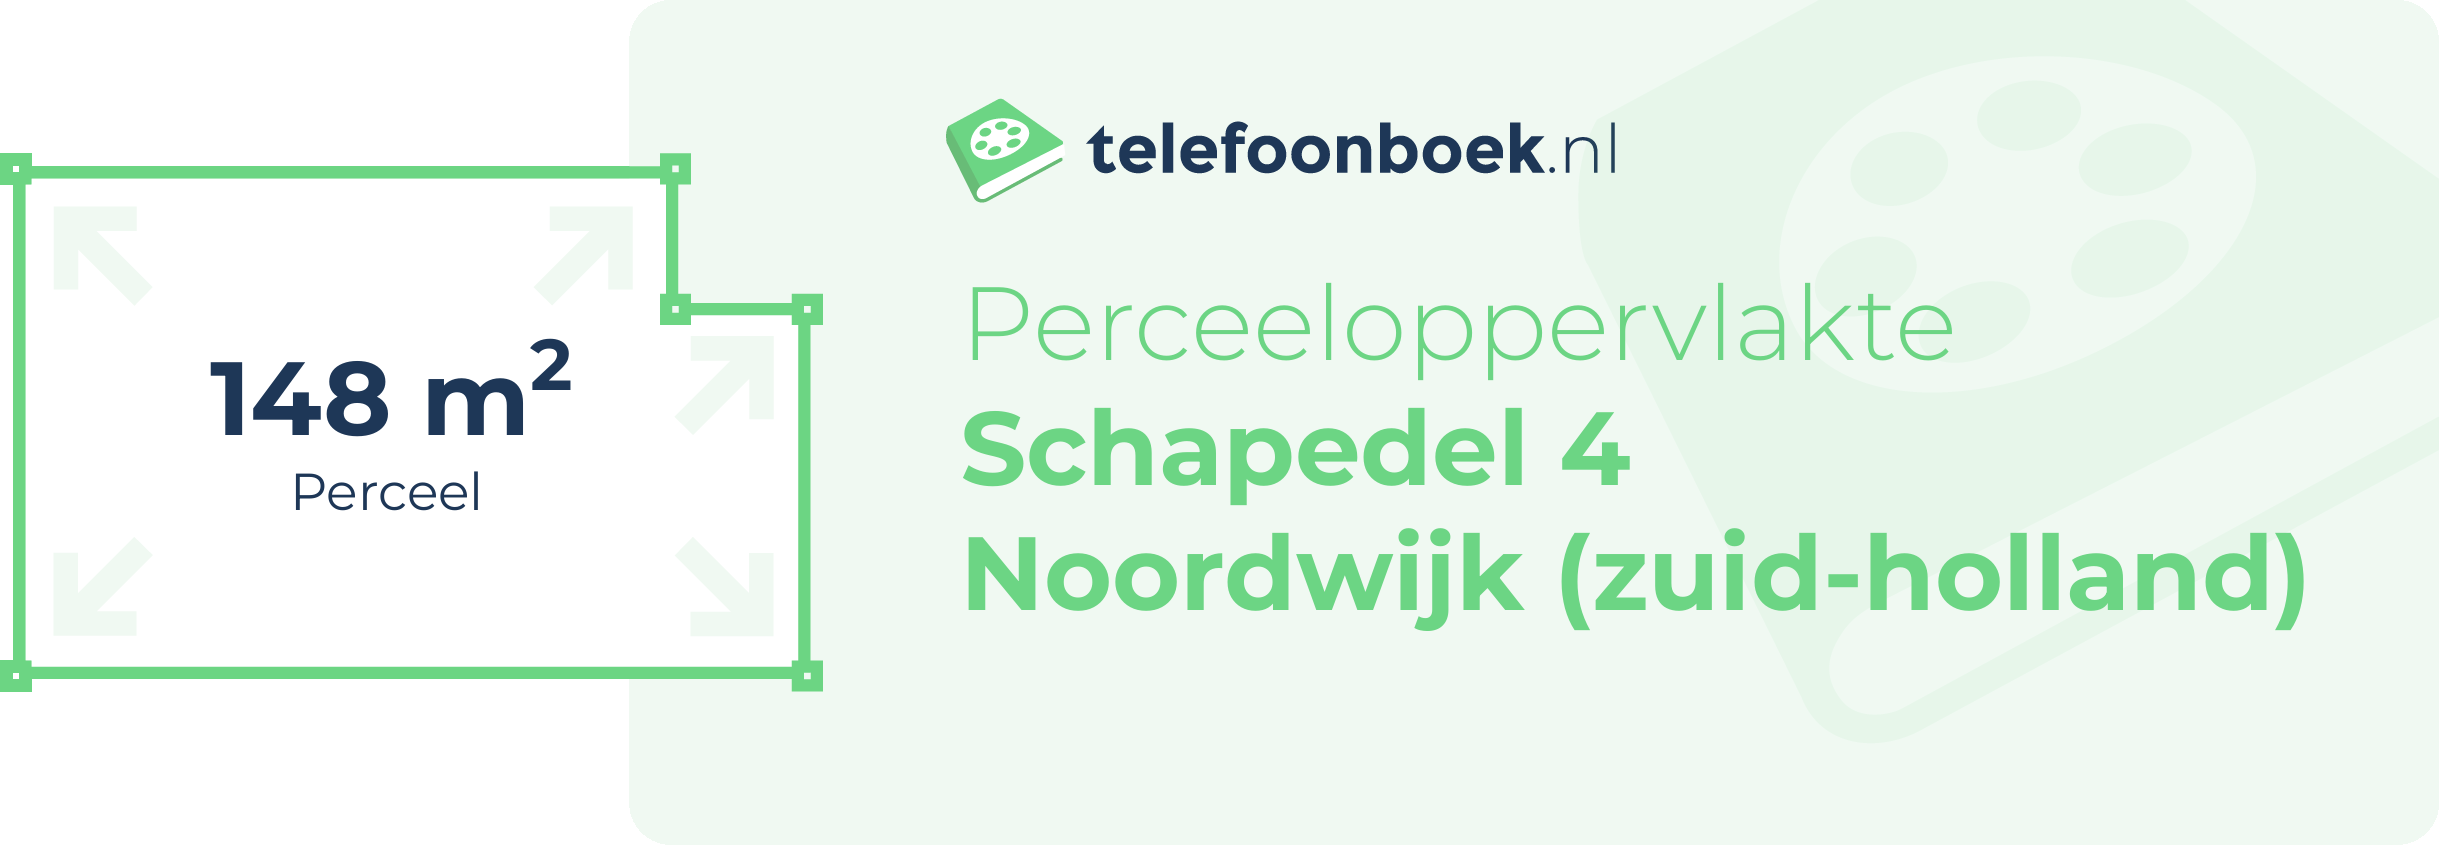 Perceeloppervlakte Schapedel 4 Noordwijk (Zuid-Holland)